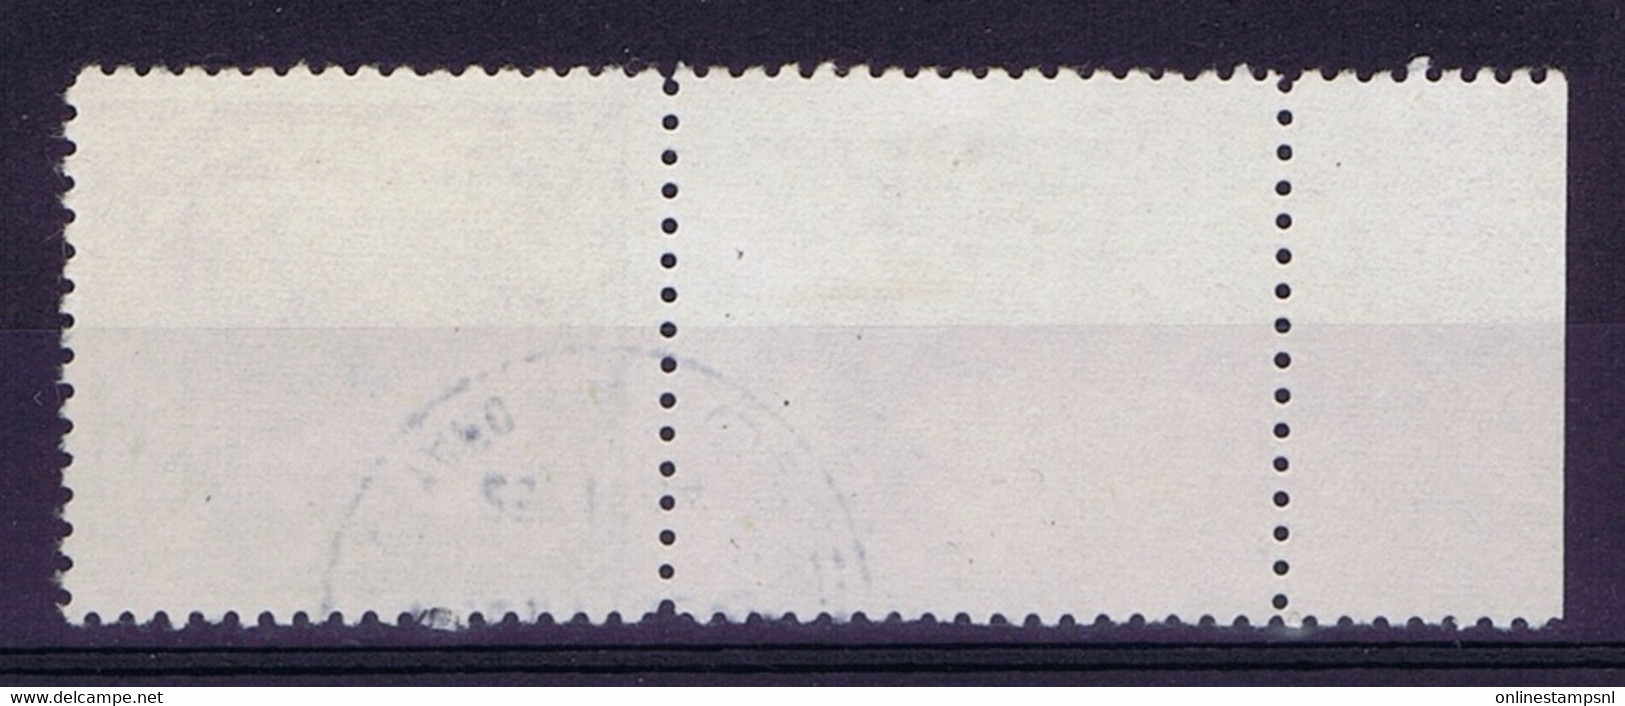 Israel: Mi 18 Used  1949 Full Tab - Used Stamps (with Tabs)